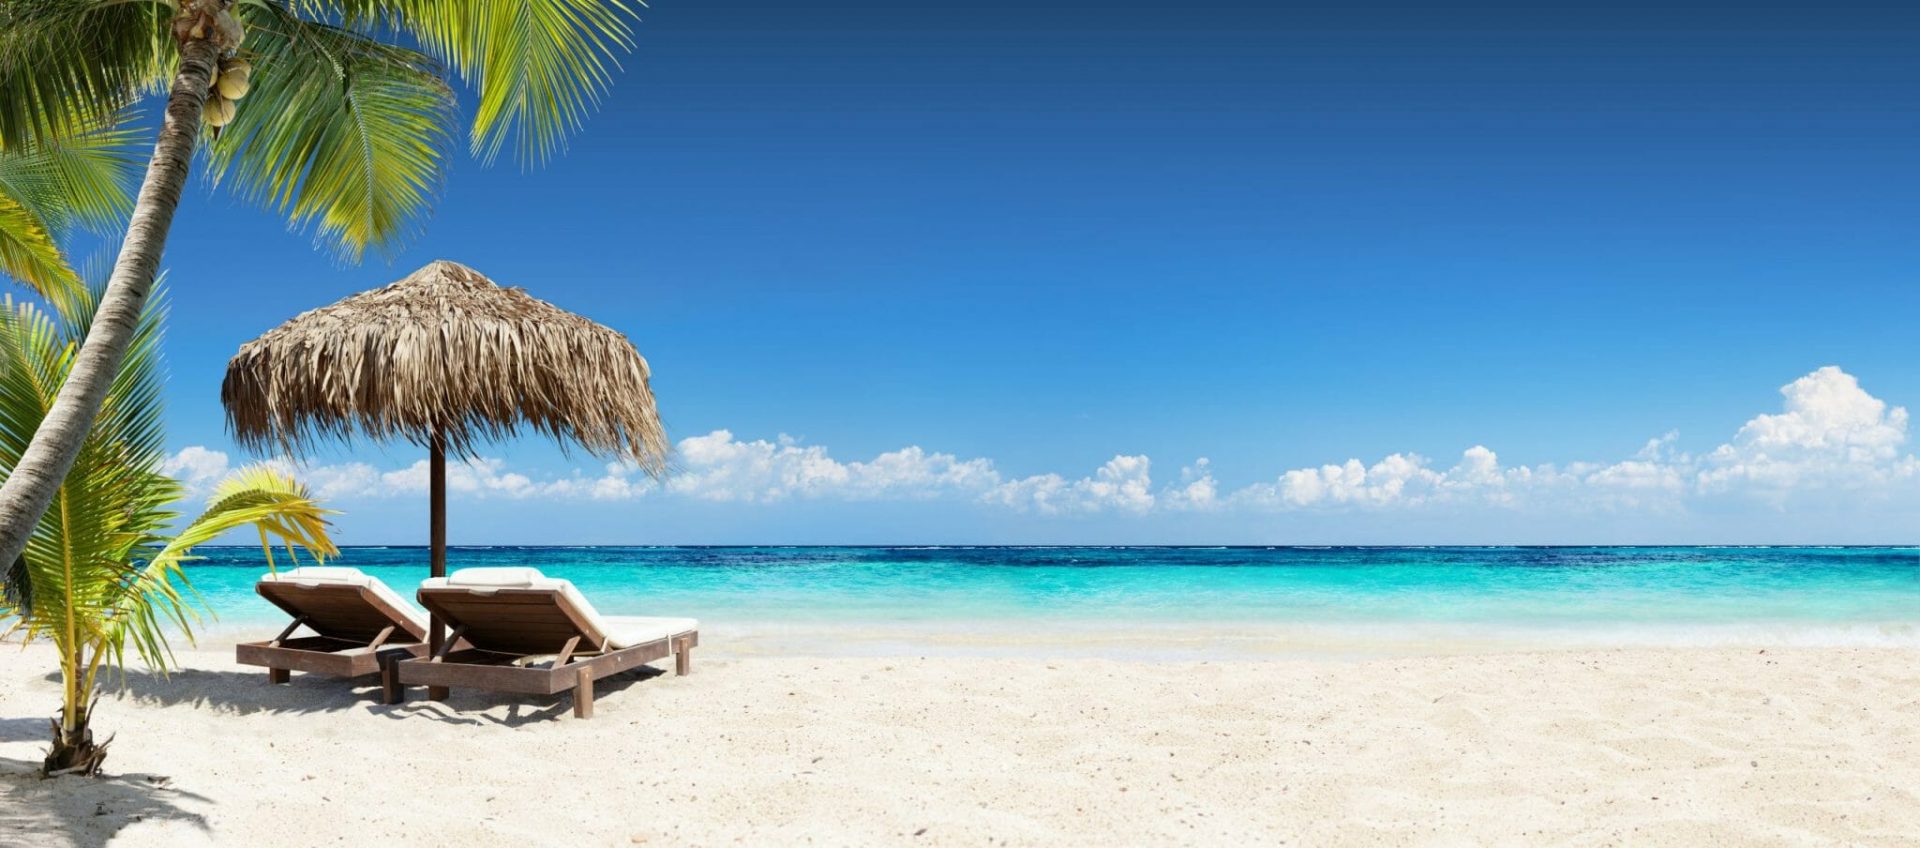 Symbolbild Reiseanfrage bei REISEBÜRO Wache stellen, zu sehen: weißer Sandstrand, türkisfarbenes Meer, Liegestühle unter Palmwedel gedecktem Sonnenschirm